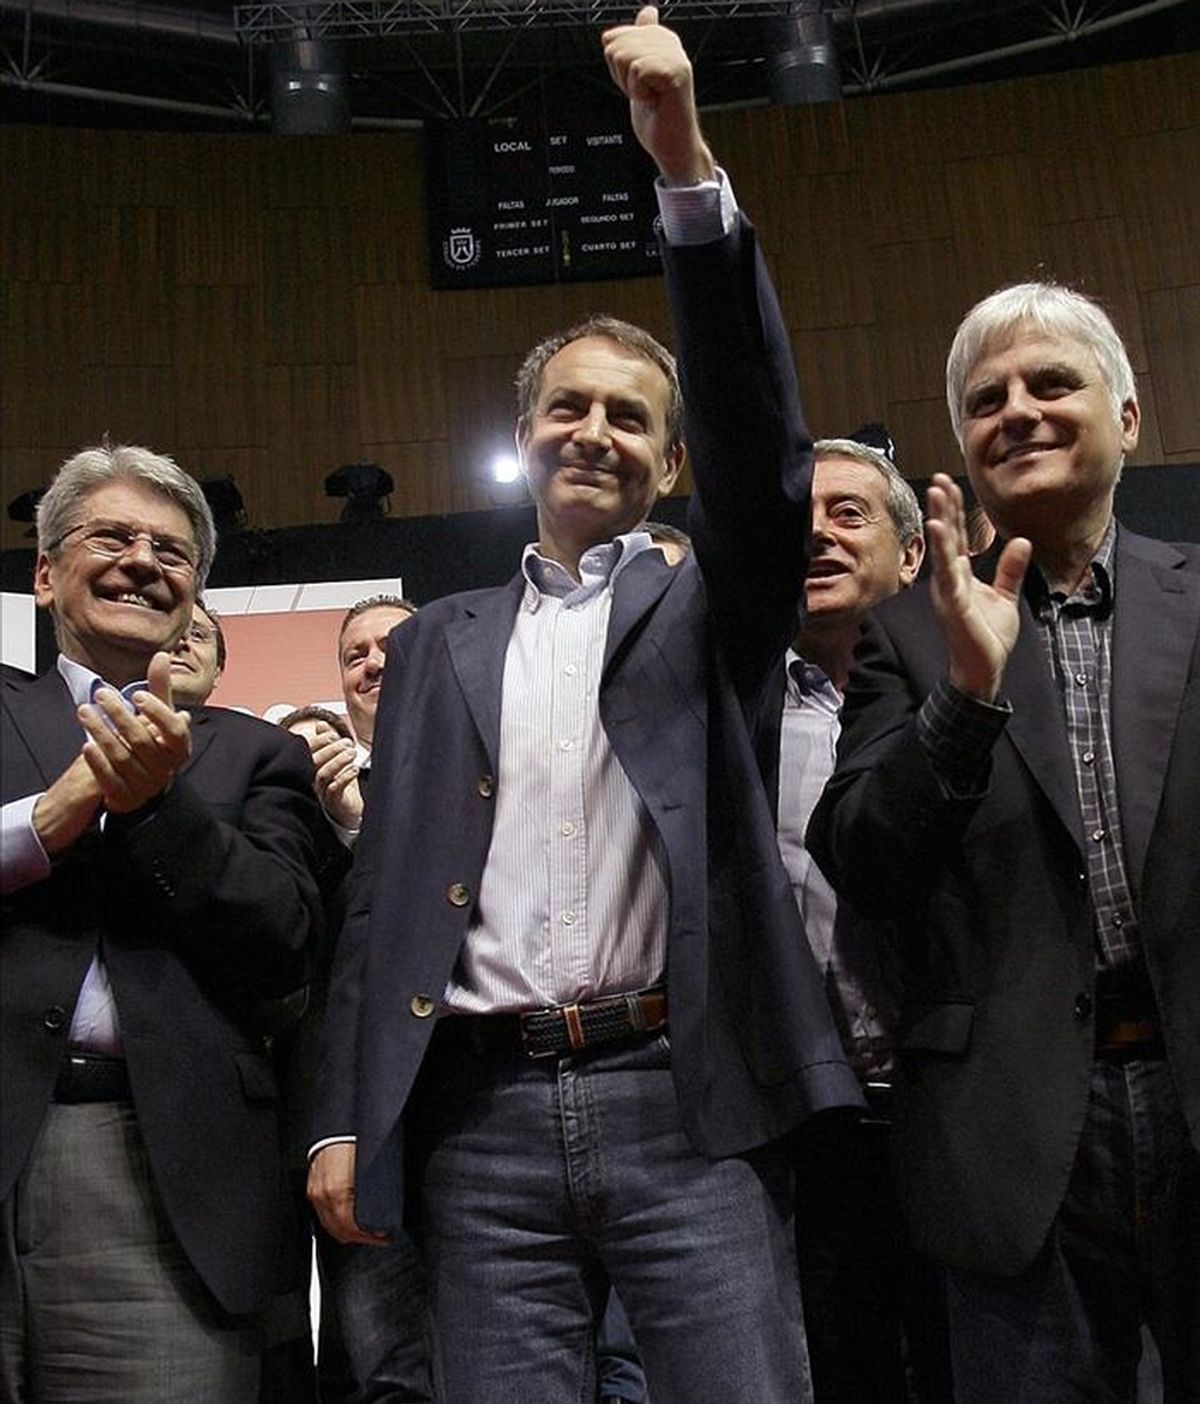 El presidente del Gobierno, José Luis Rodríguez Zapatero, arremete contra el PP. Vídeo: Informativos Telecinco.